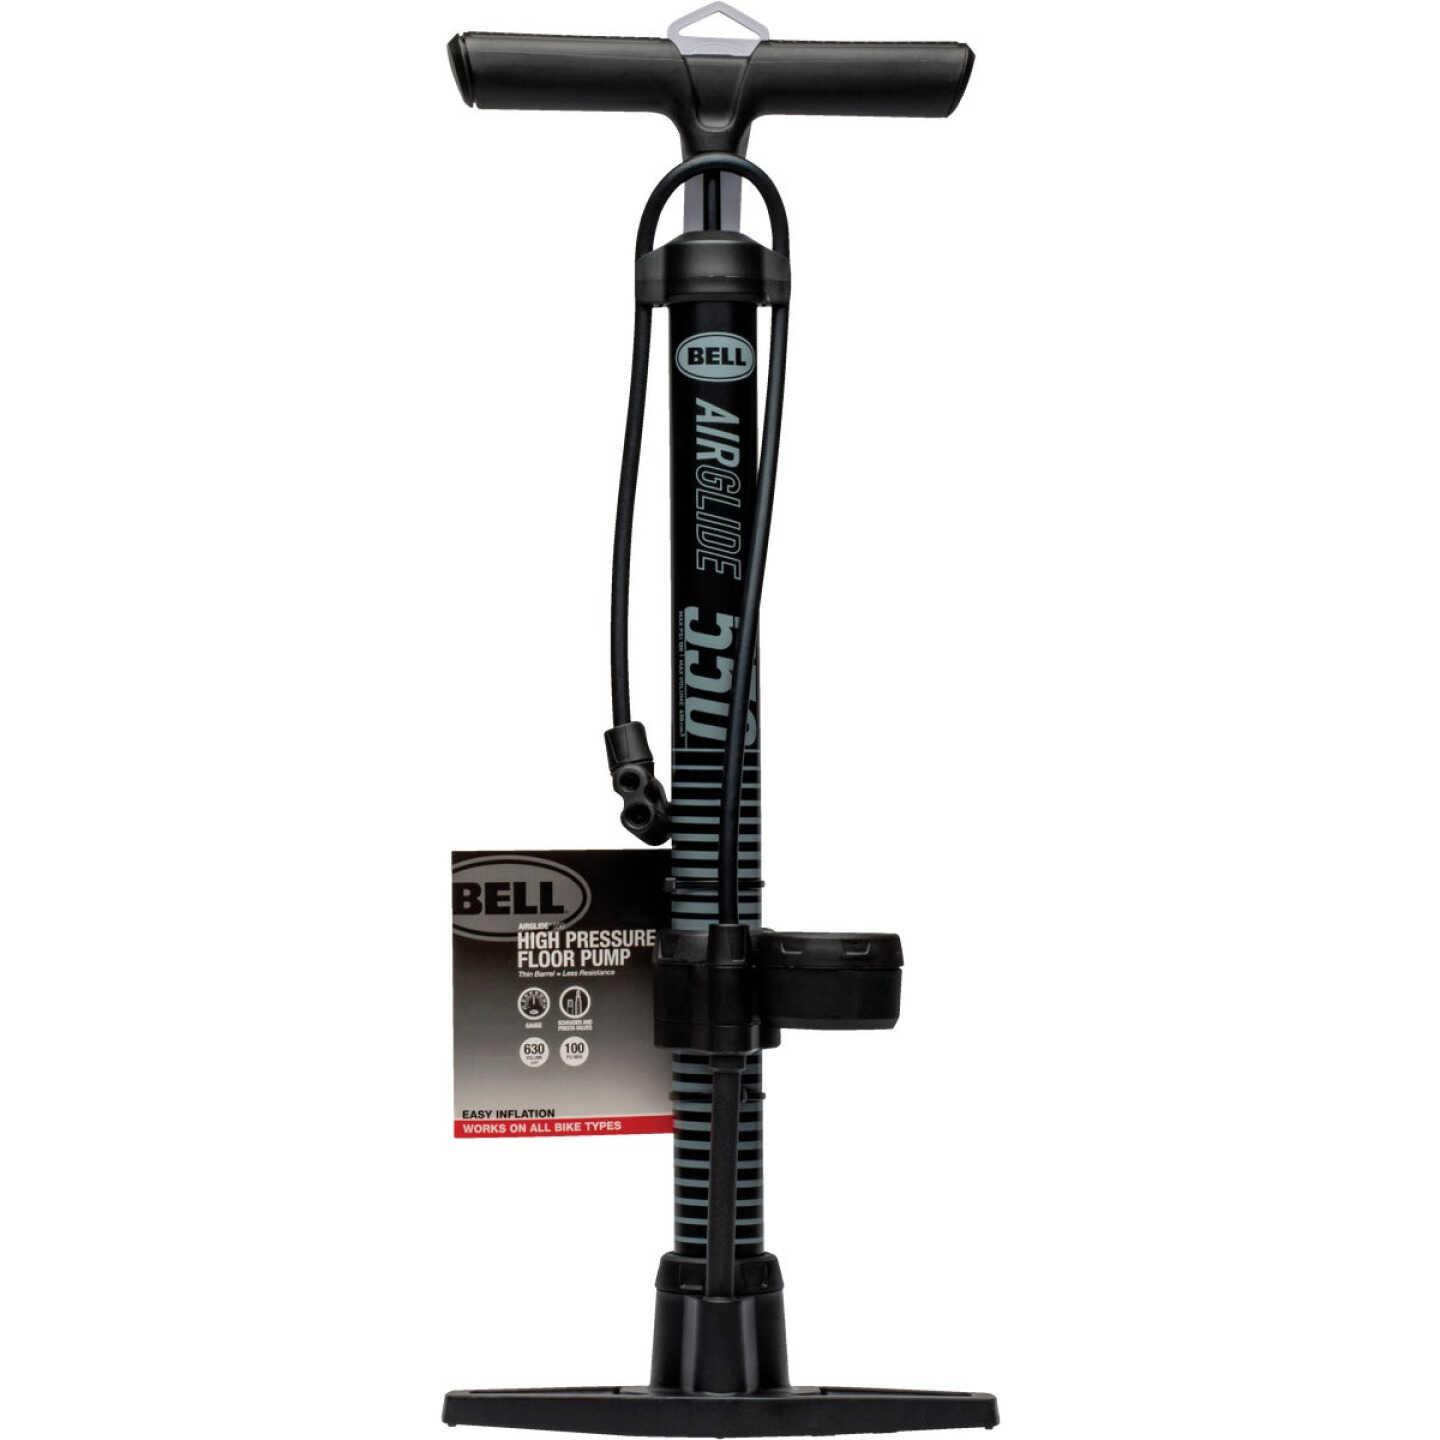 Bell Sports Schrader/Presta Valve 100 PSI Bicycle Floor Pump with Gauge -  Dunham's